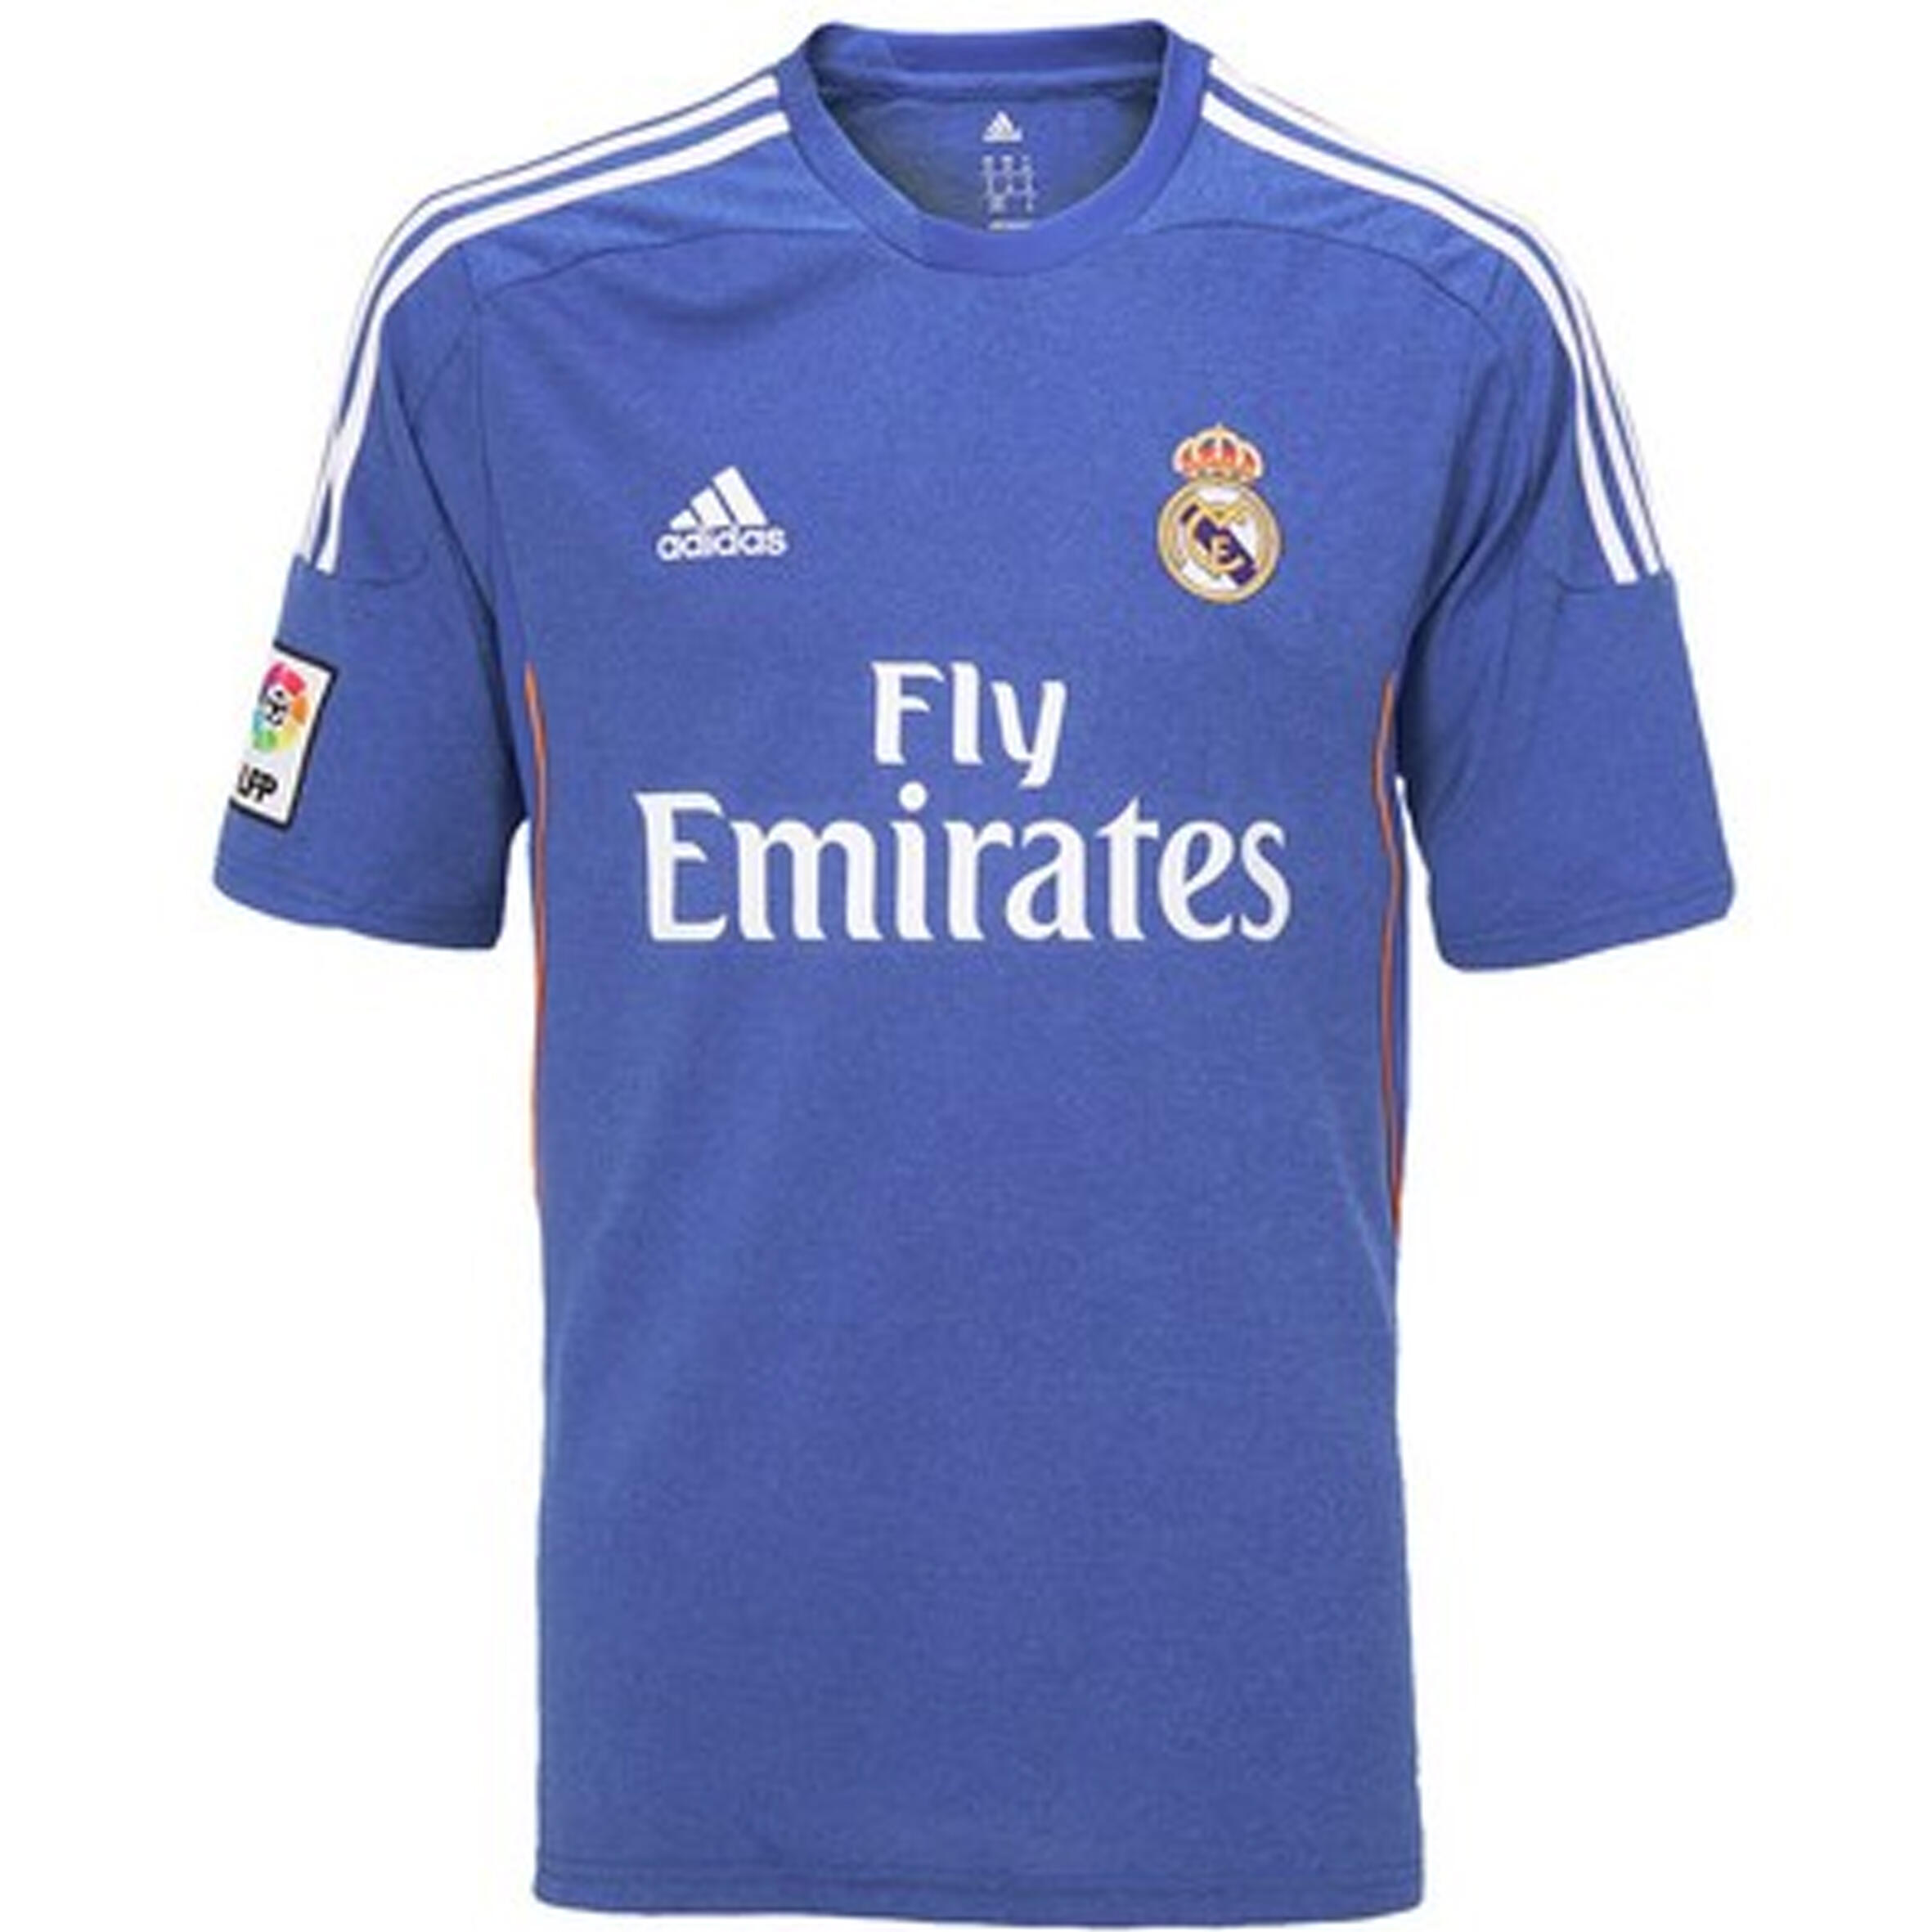 Real Madrid Shirts